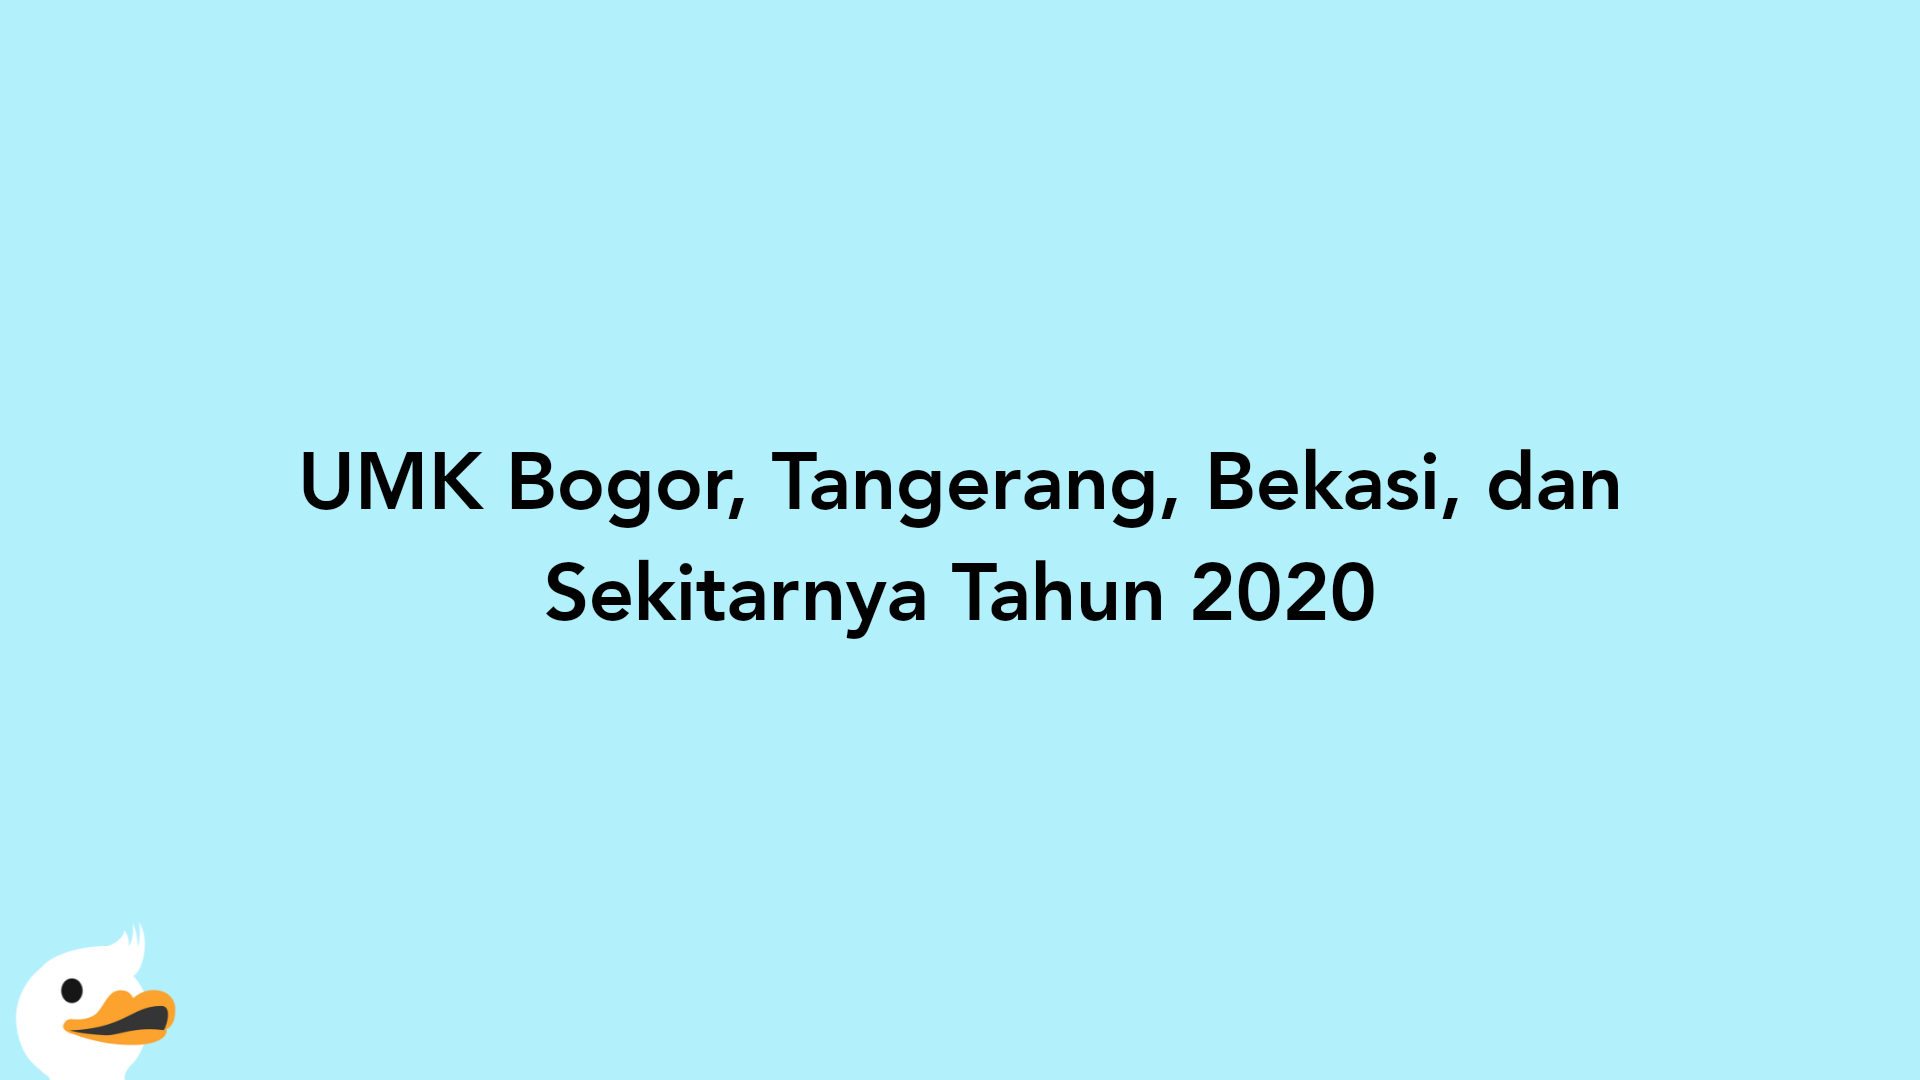 UMK Bogor, Tangerang, Bekasi, dan Sekitarnya Tahun 2020